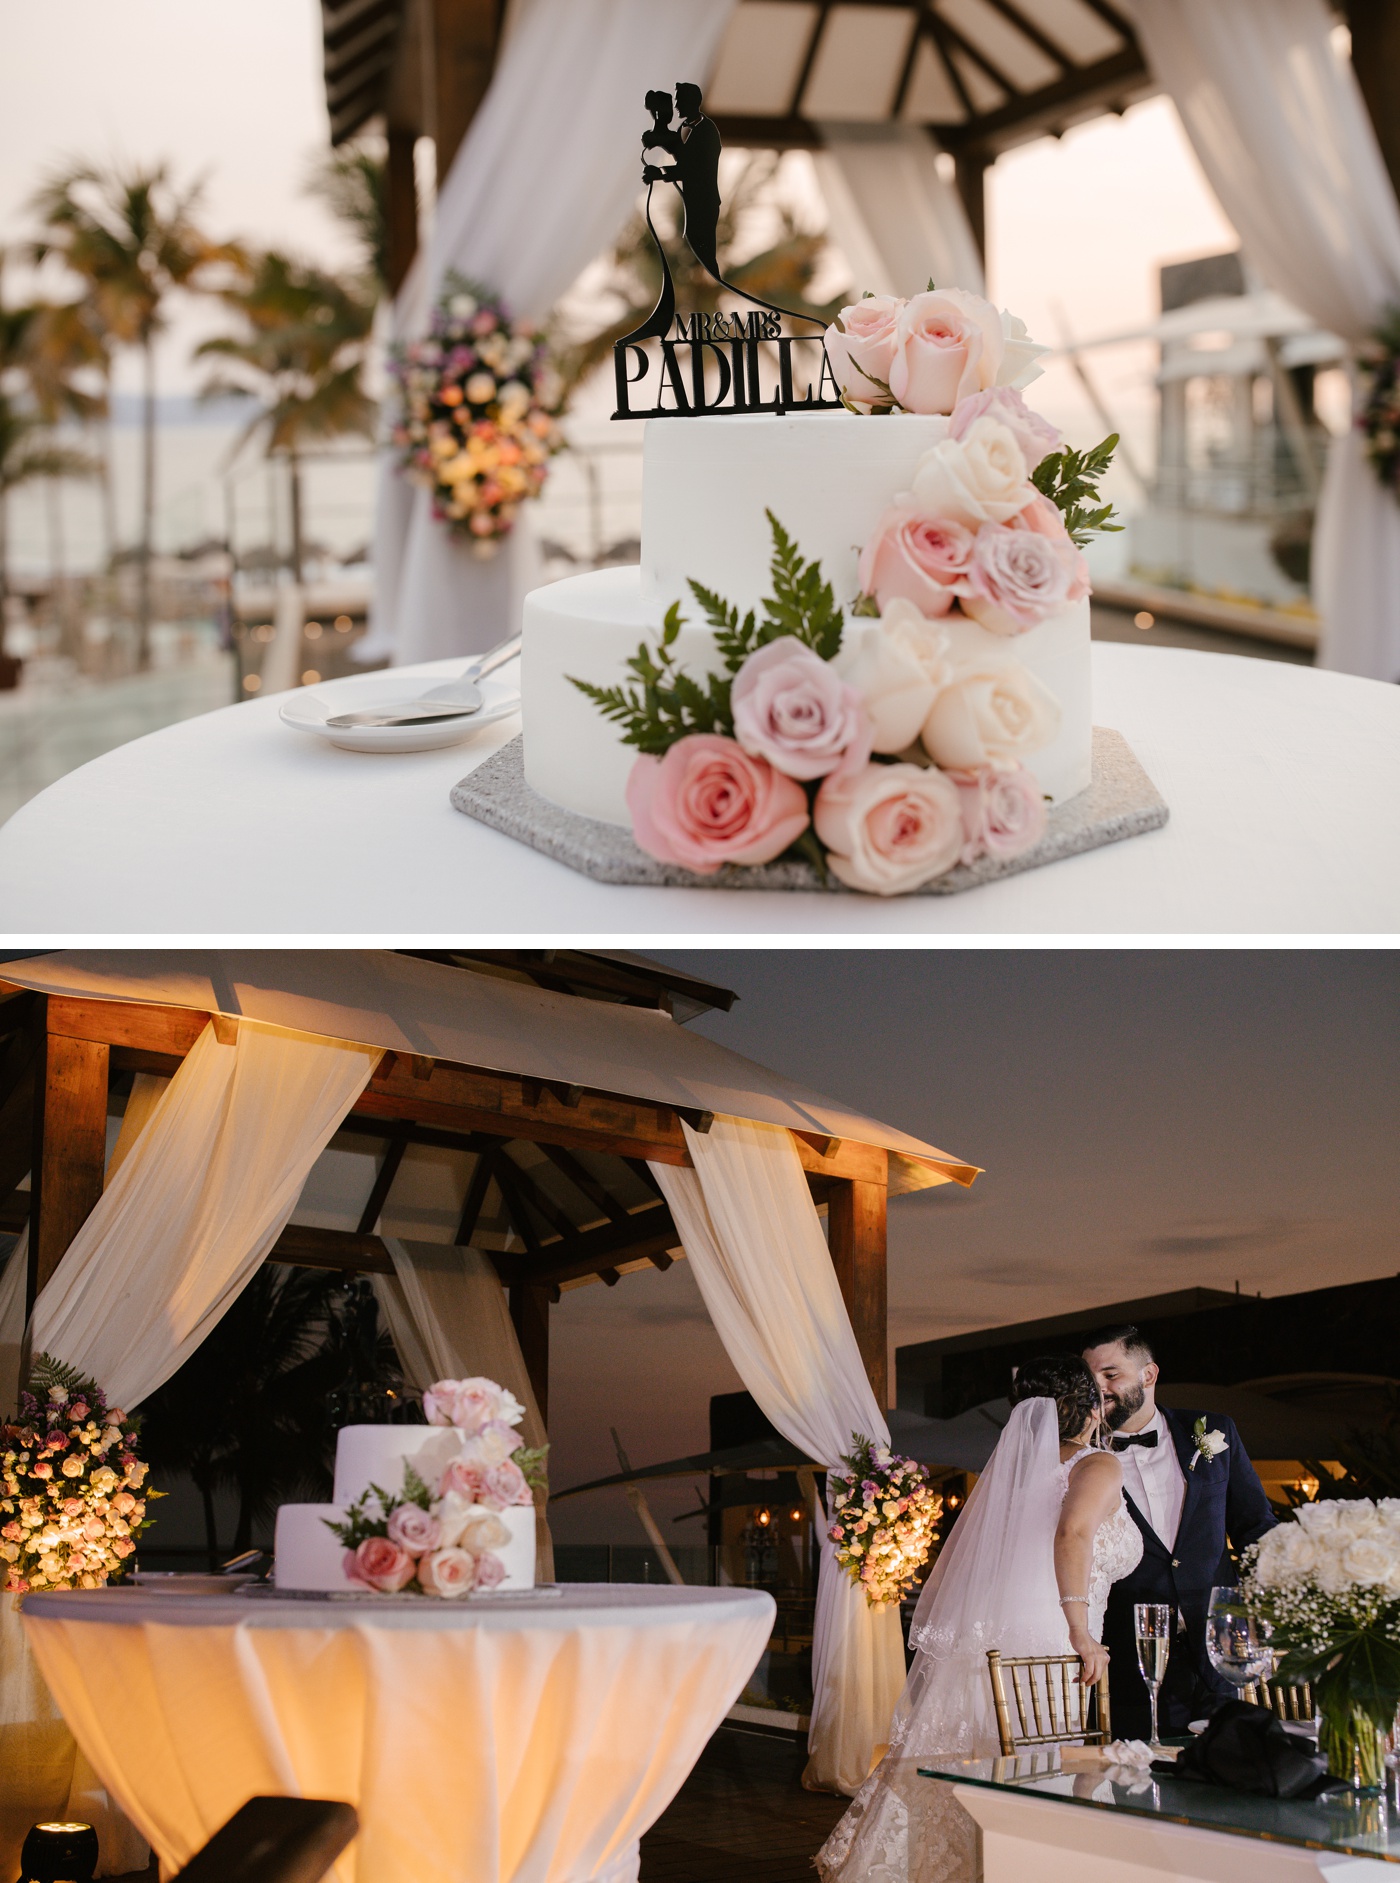 Outdoor wedding reception at Secrets Vallarta Bay